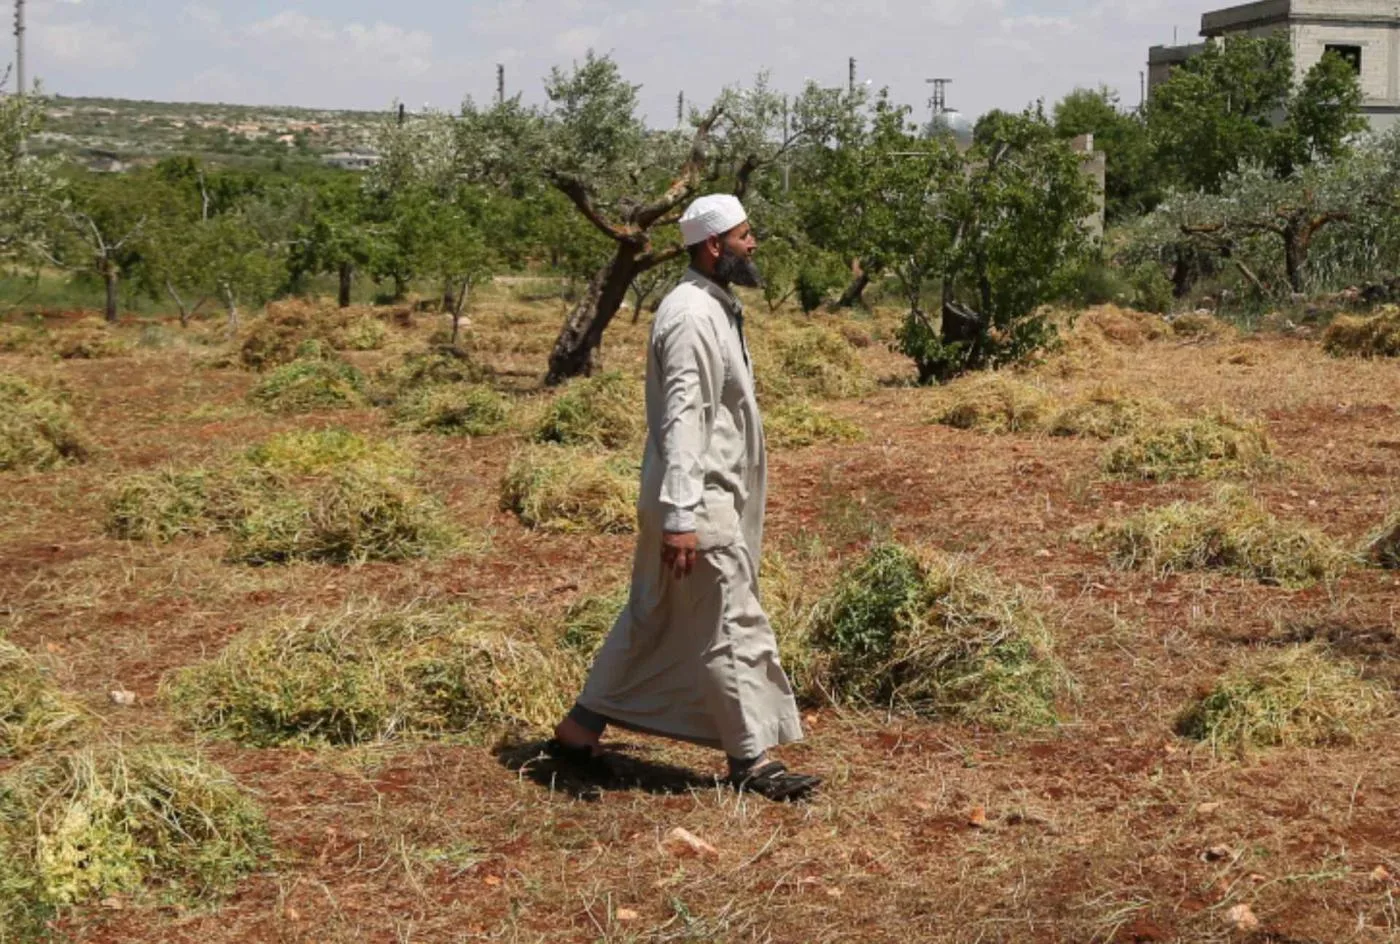 أحمد الأمين يتفقد مزرعته المتضررة في جبل الزاوية جنوب محافظة إدلب